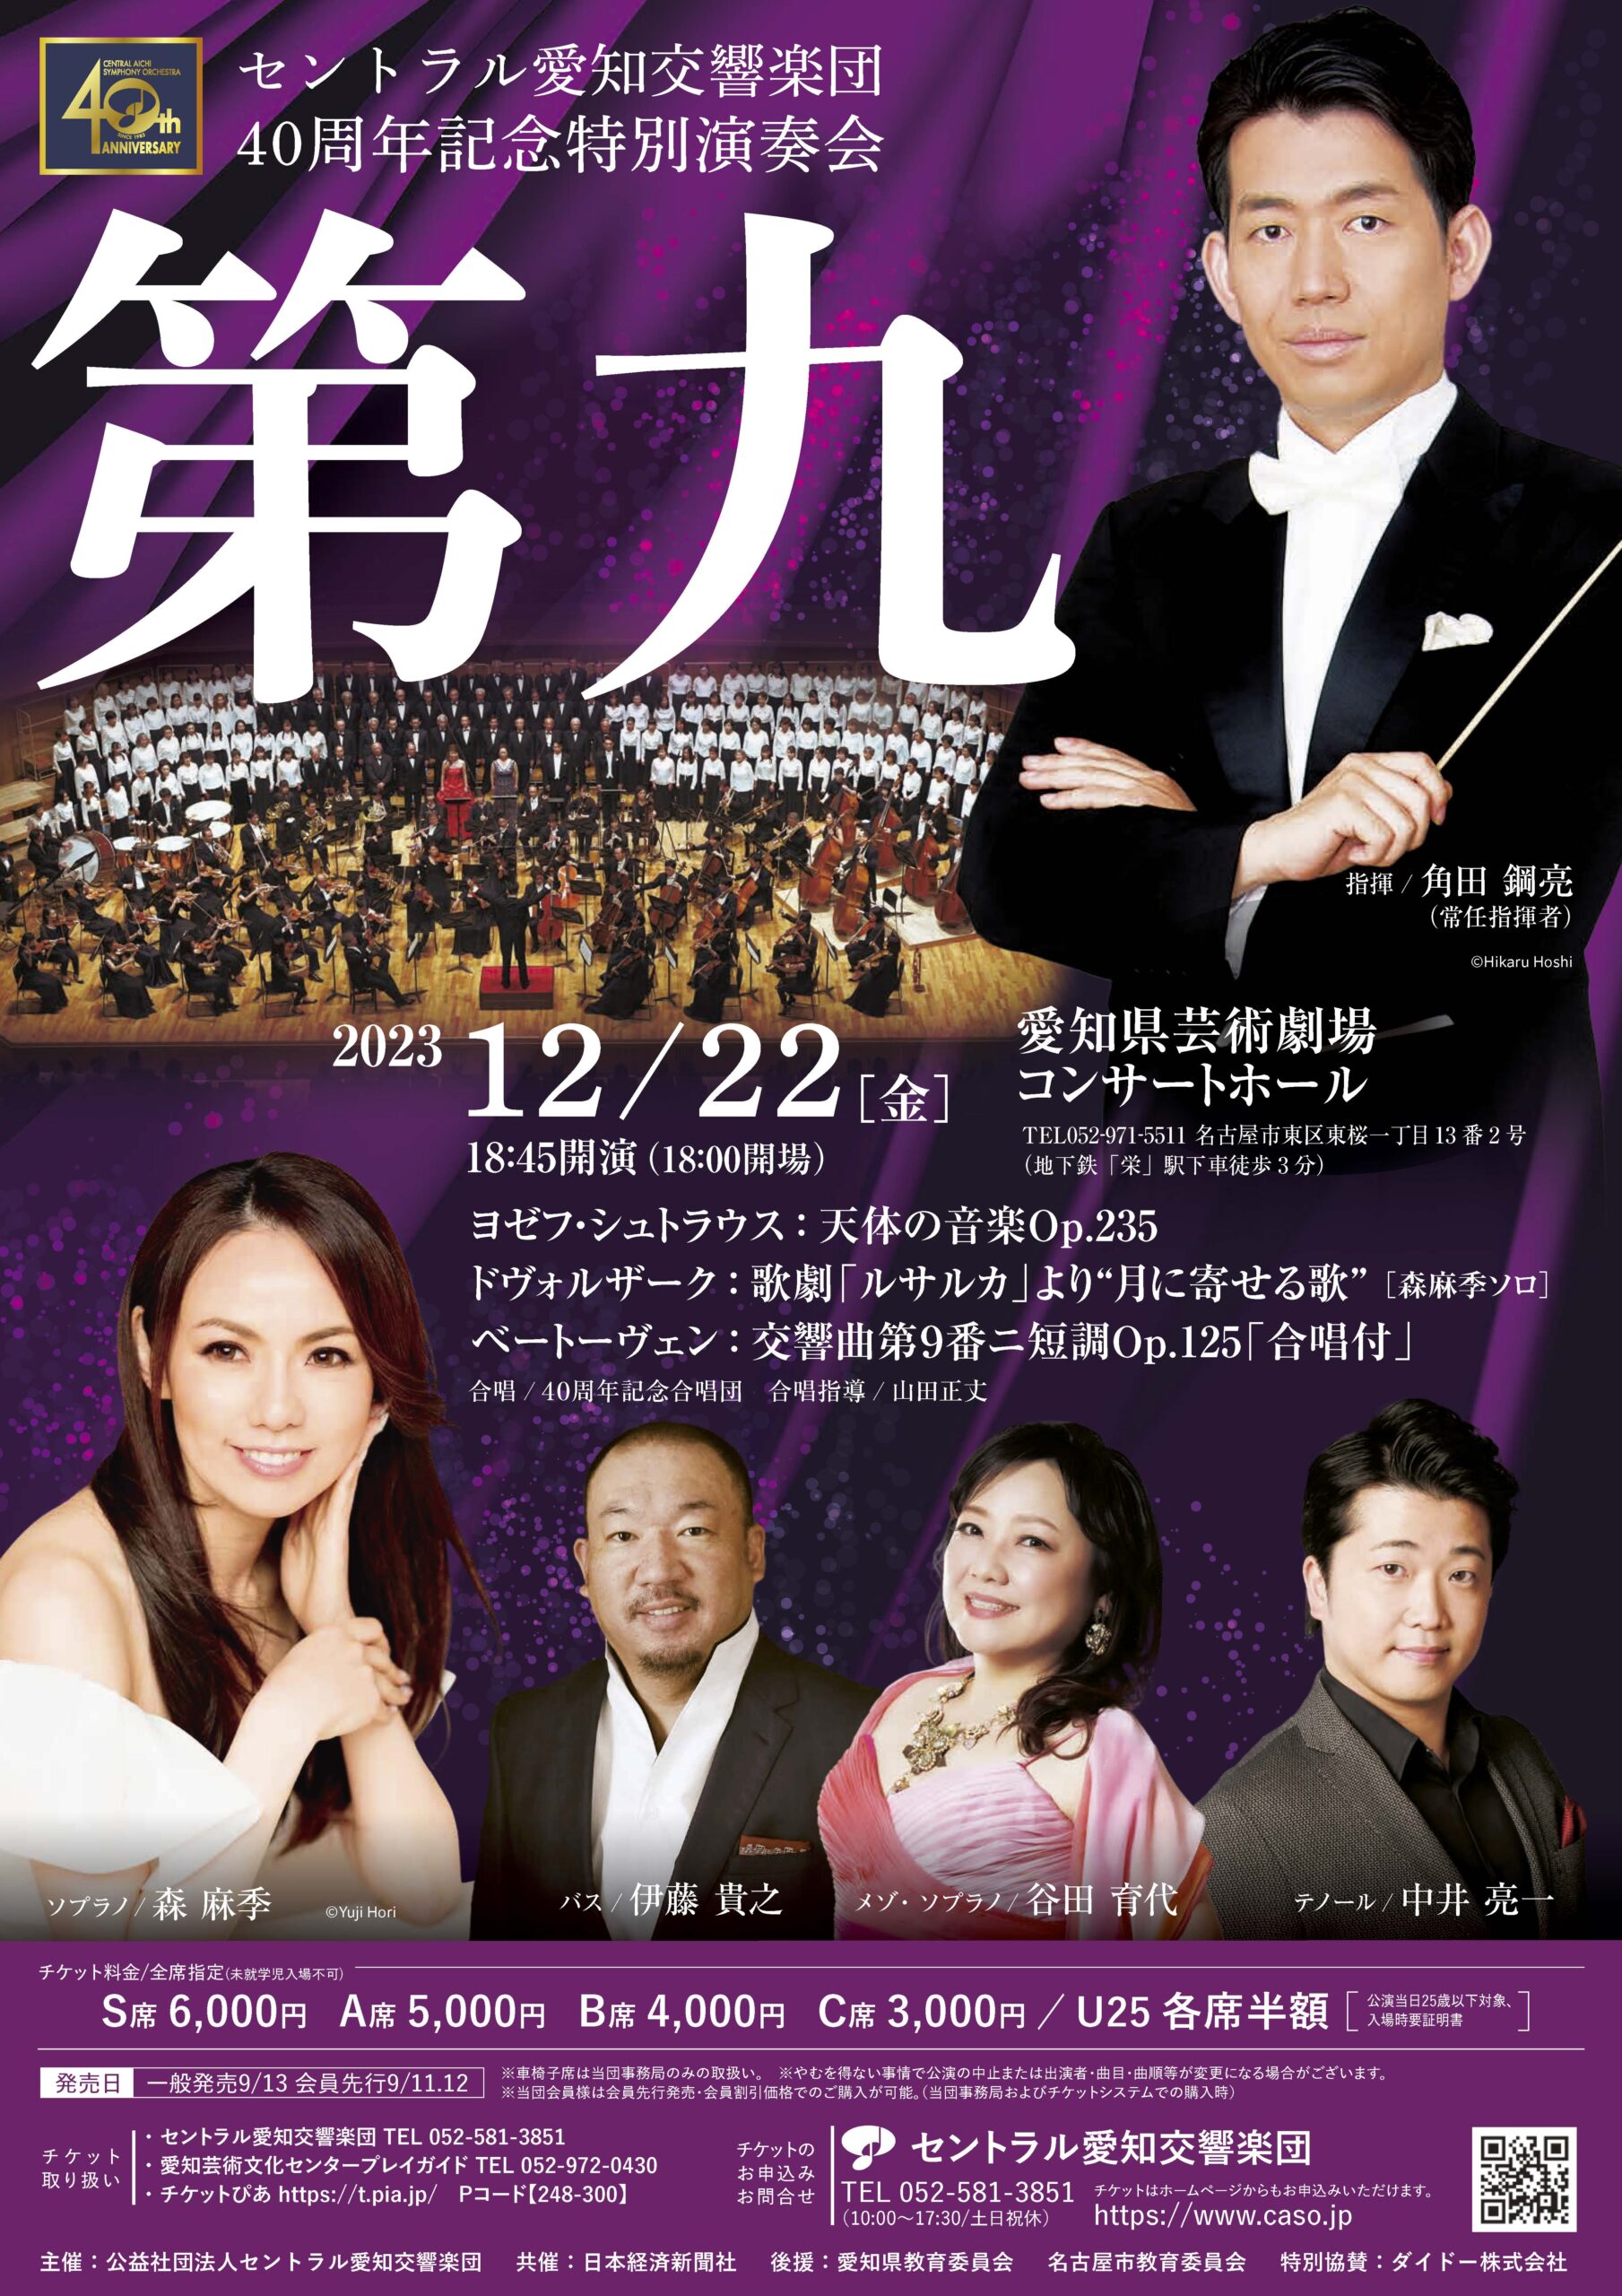 セントラル愛知交響楽団40周年記念特別演奏会「第九」